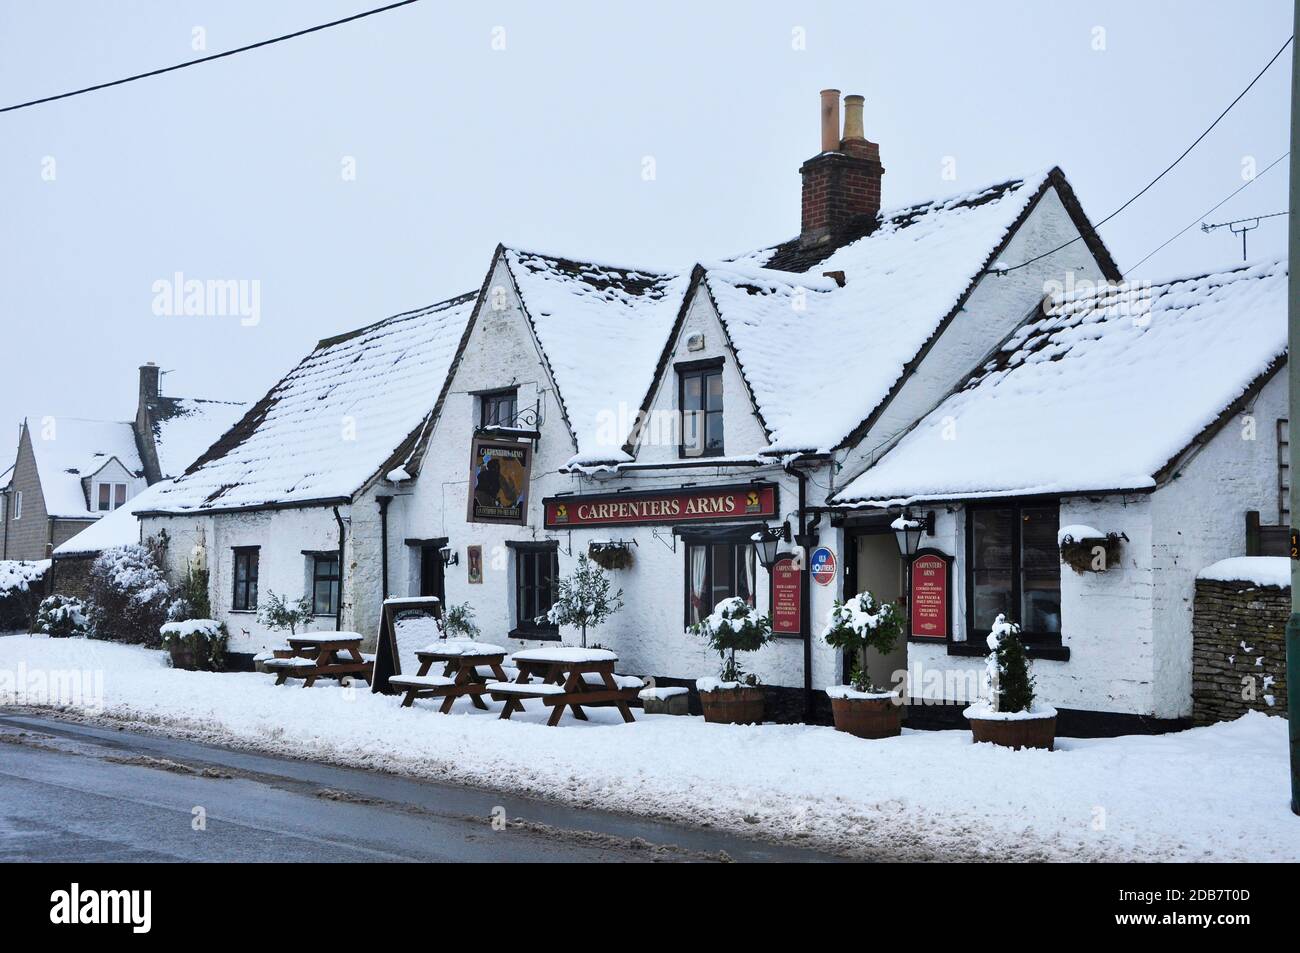 La neige couverte Carpenters Arms maison publique dans le attrayant village de sherston, dans le comté de cotswold, dans le Wiltshire.UK Banque D'Images